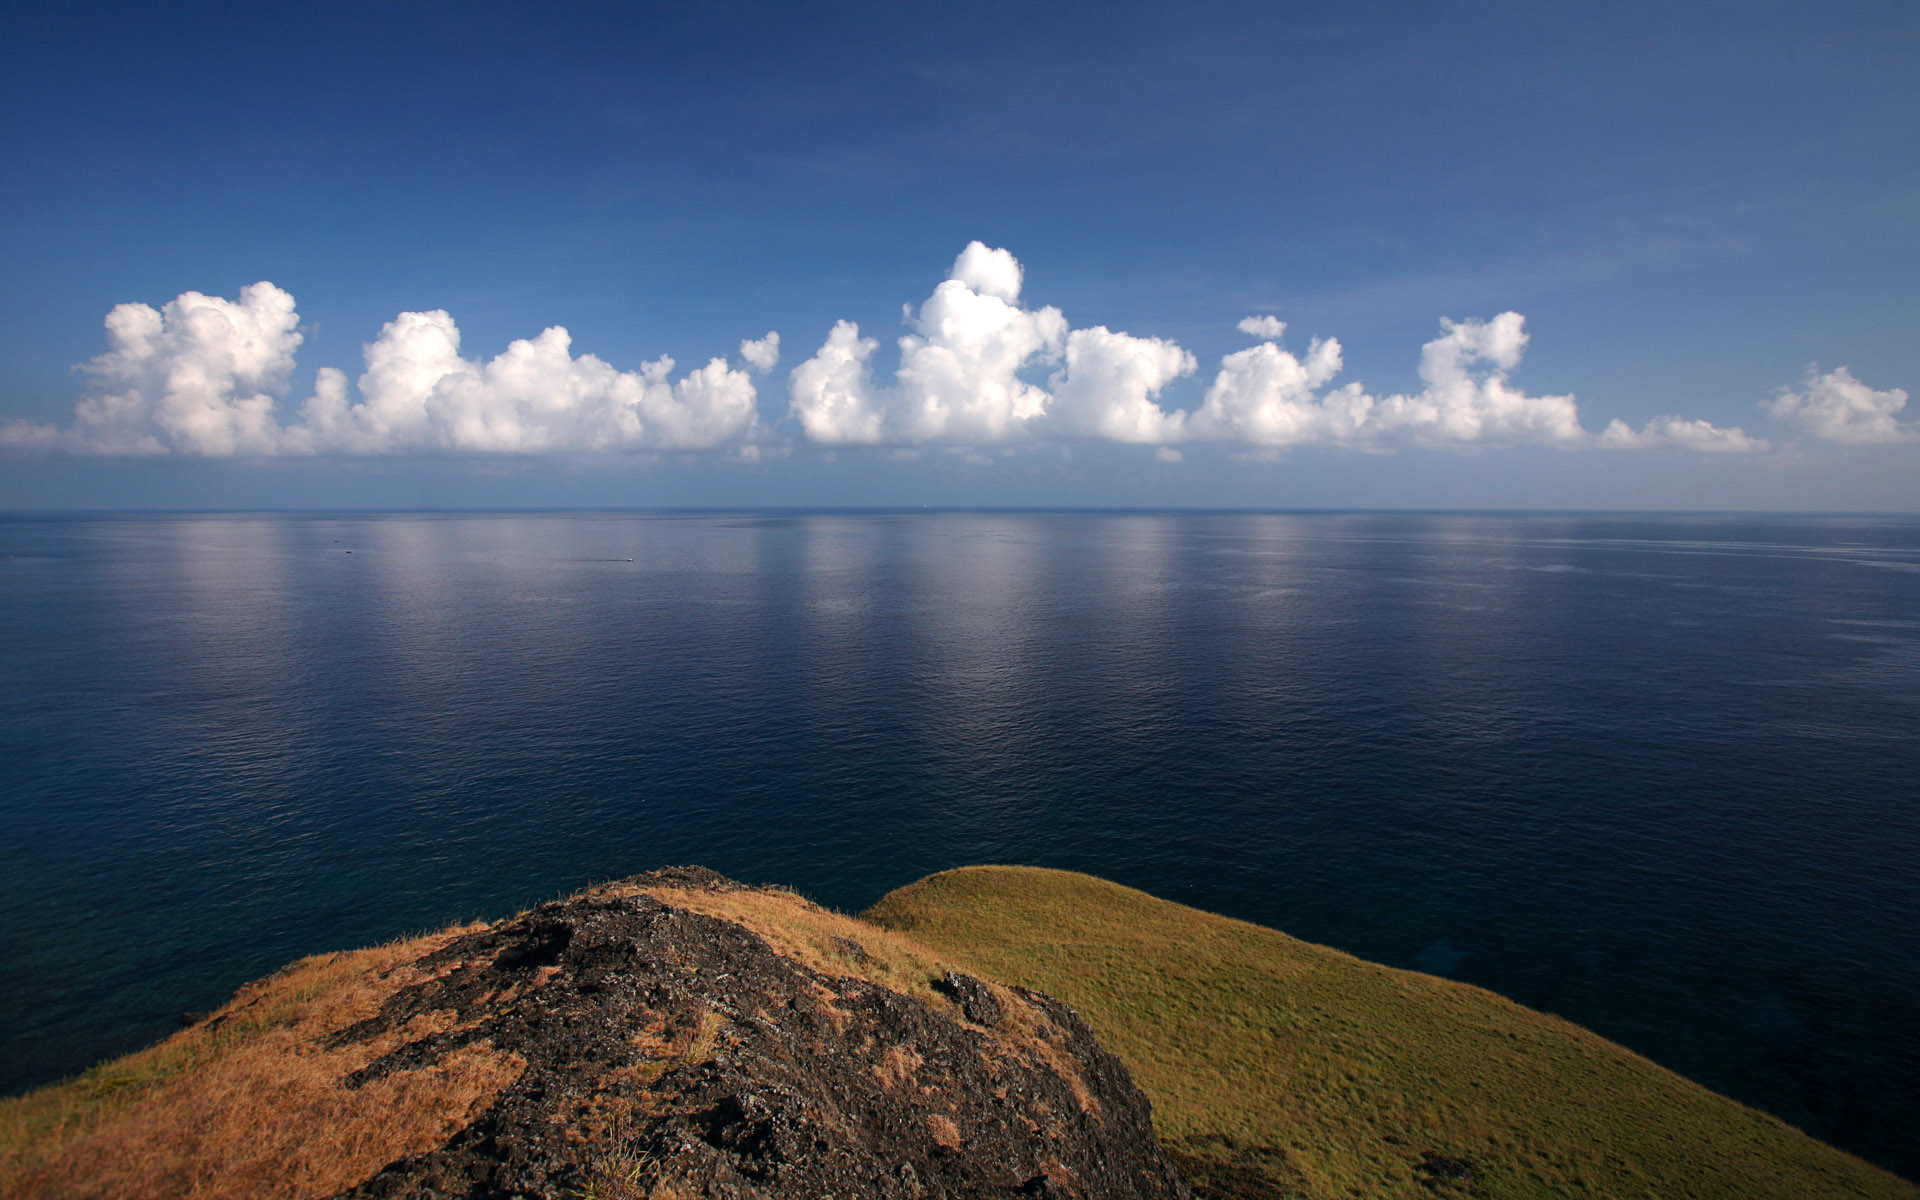 綠島海岸(Sea view from a rock at Green Island)